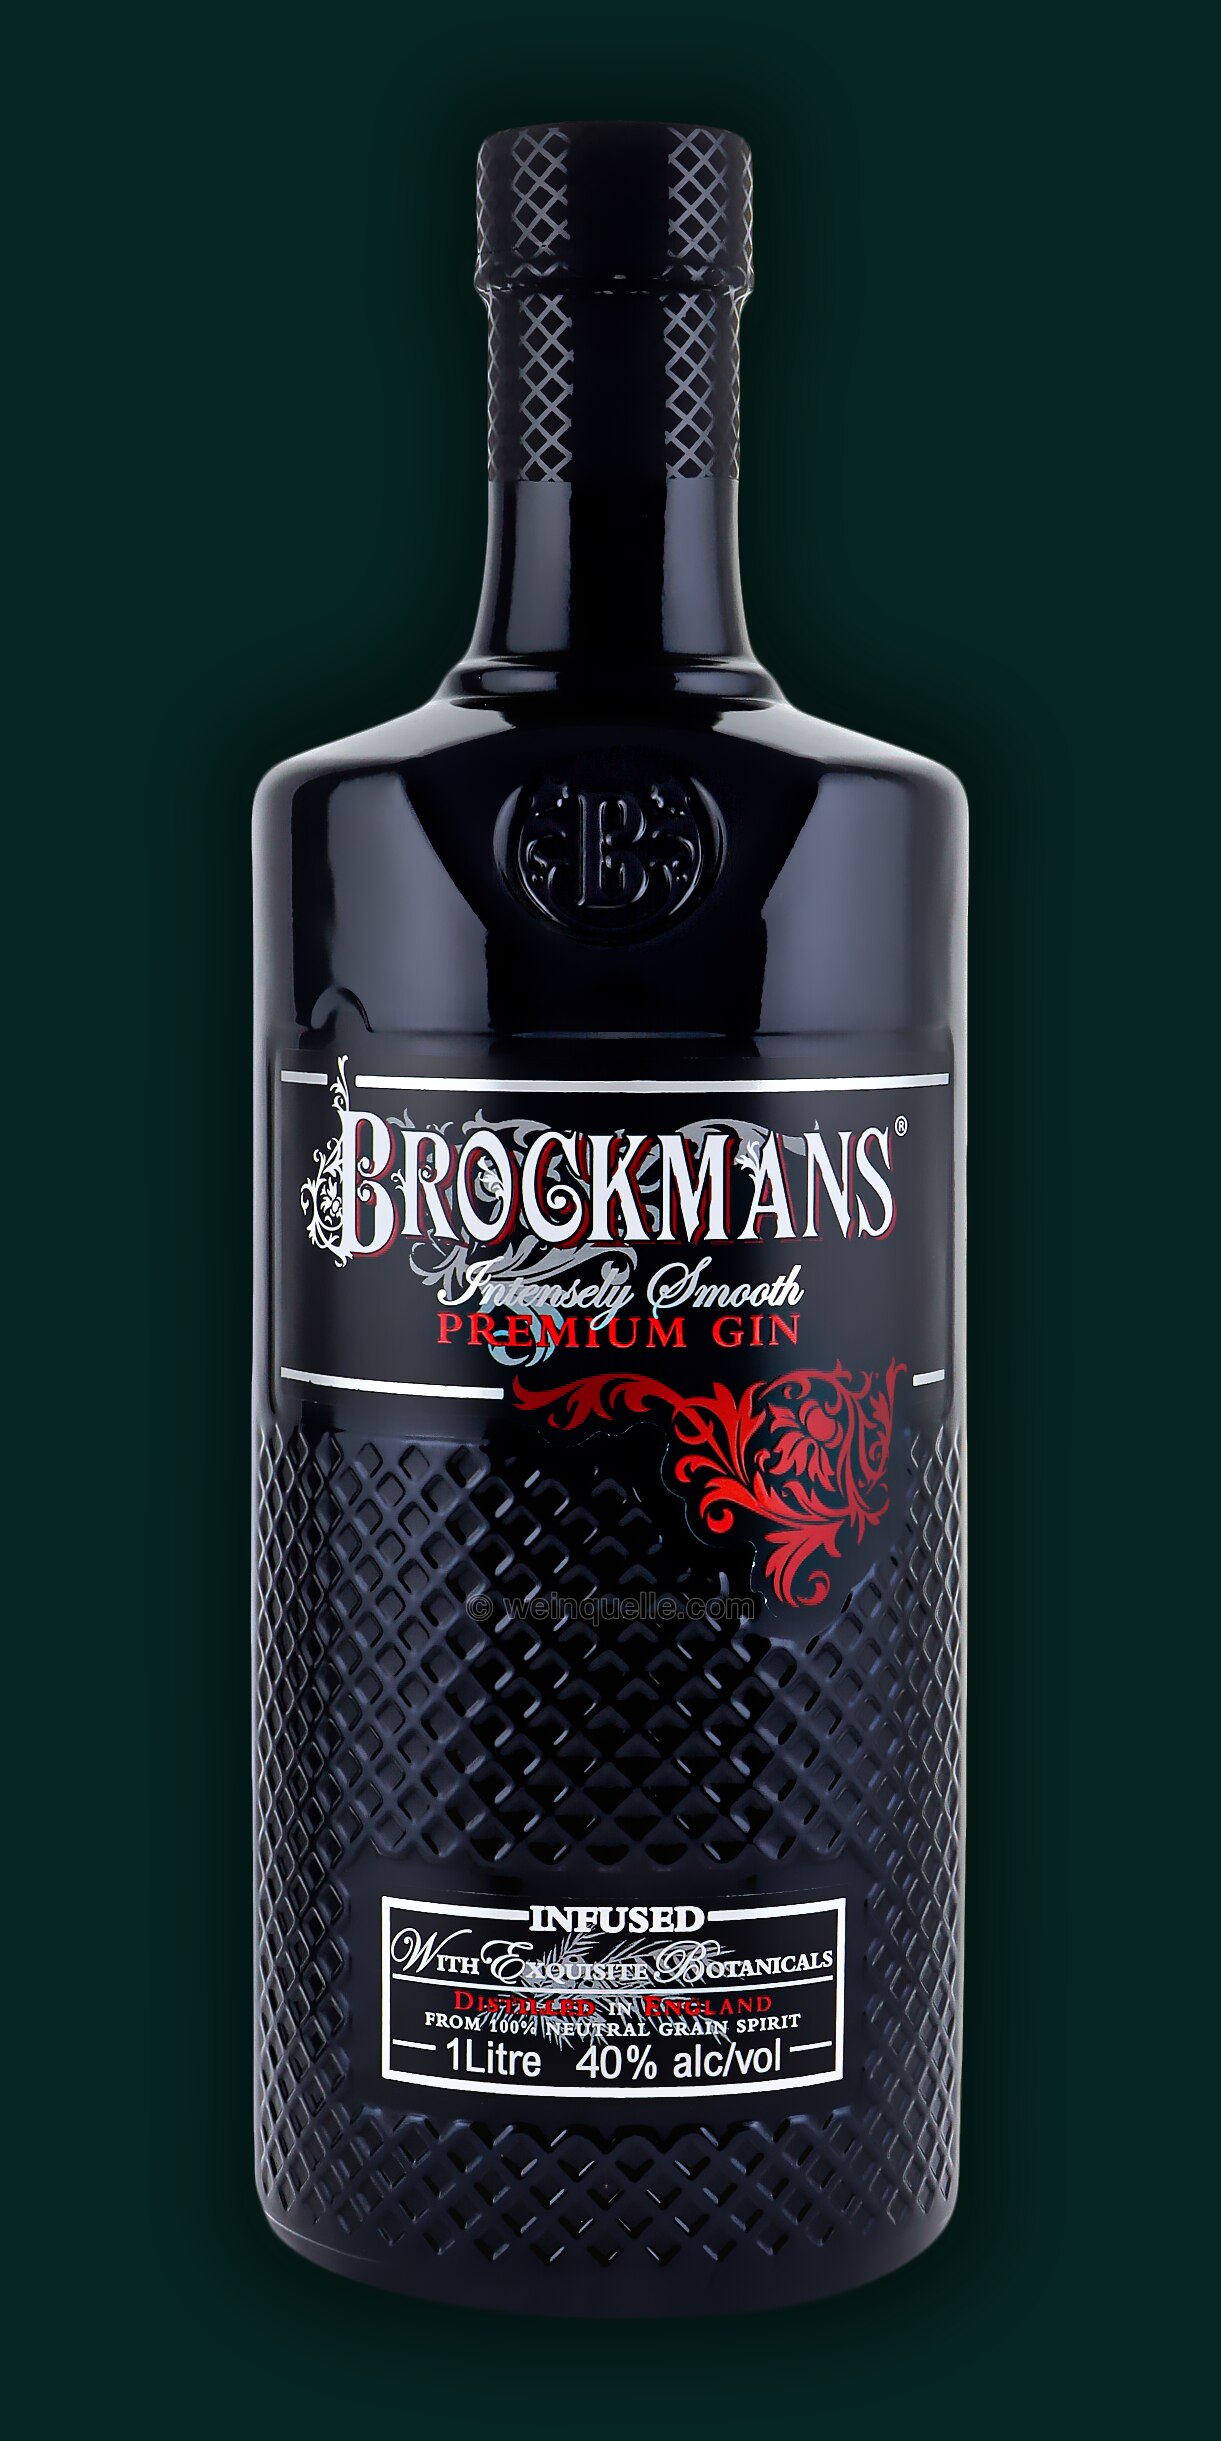 Weinquelle Brockmans € Gin - 39,95 Liter, Lühmann 1,00